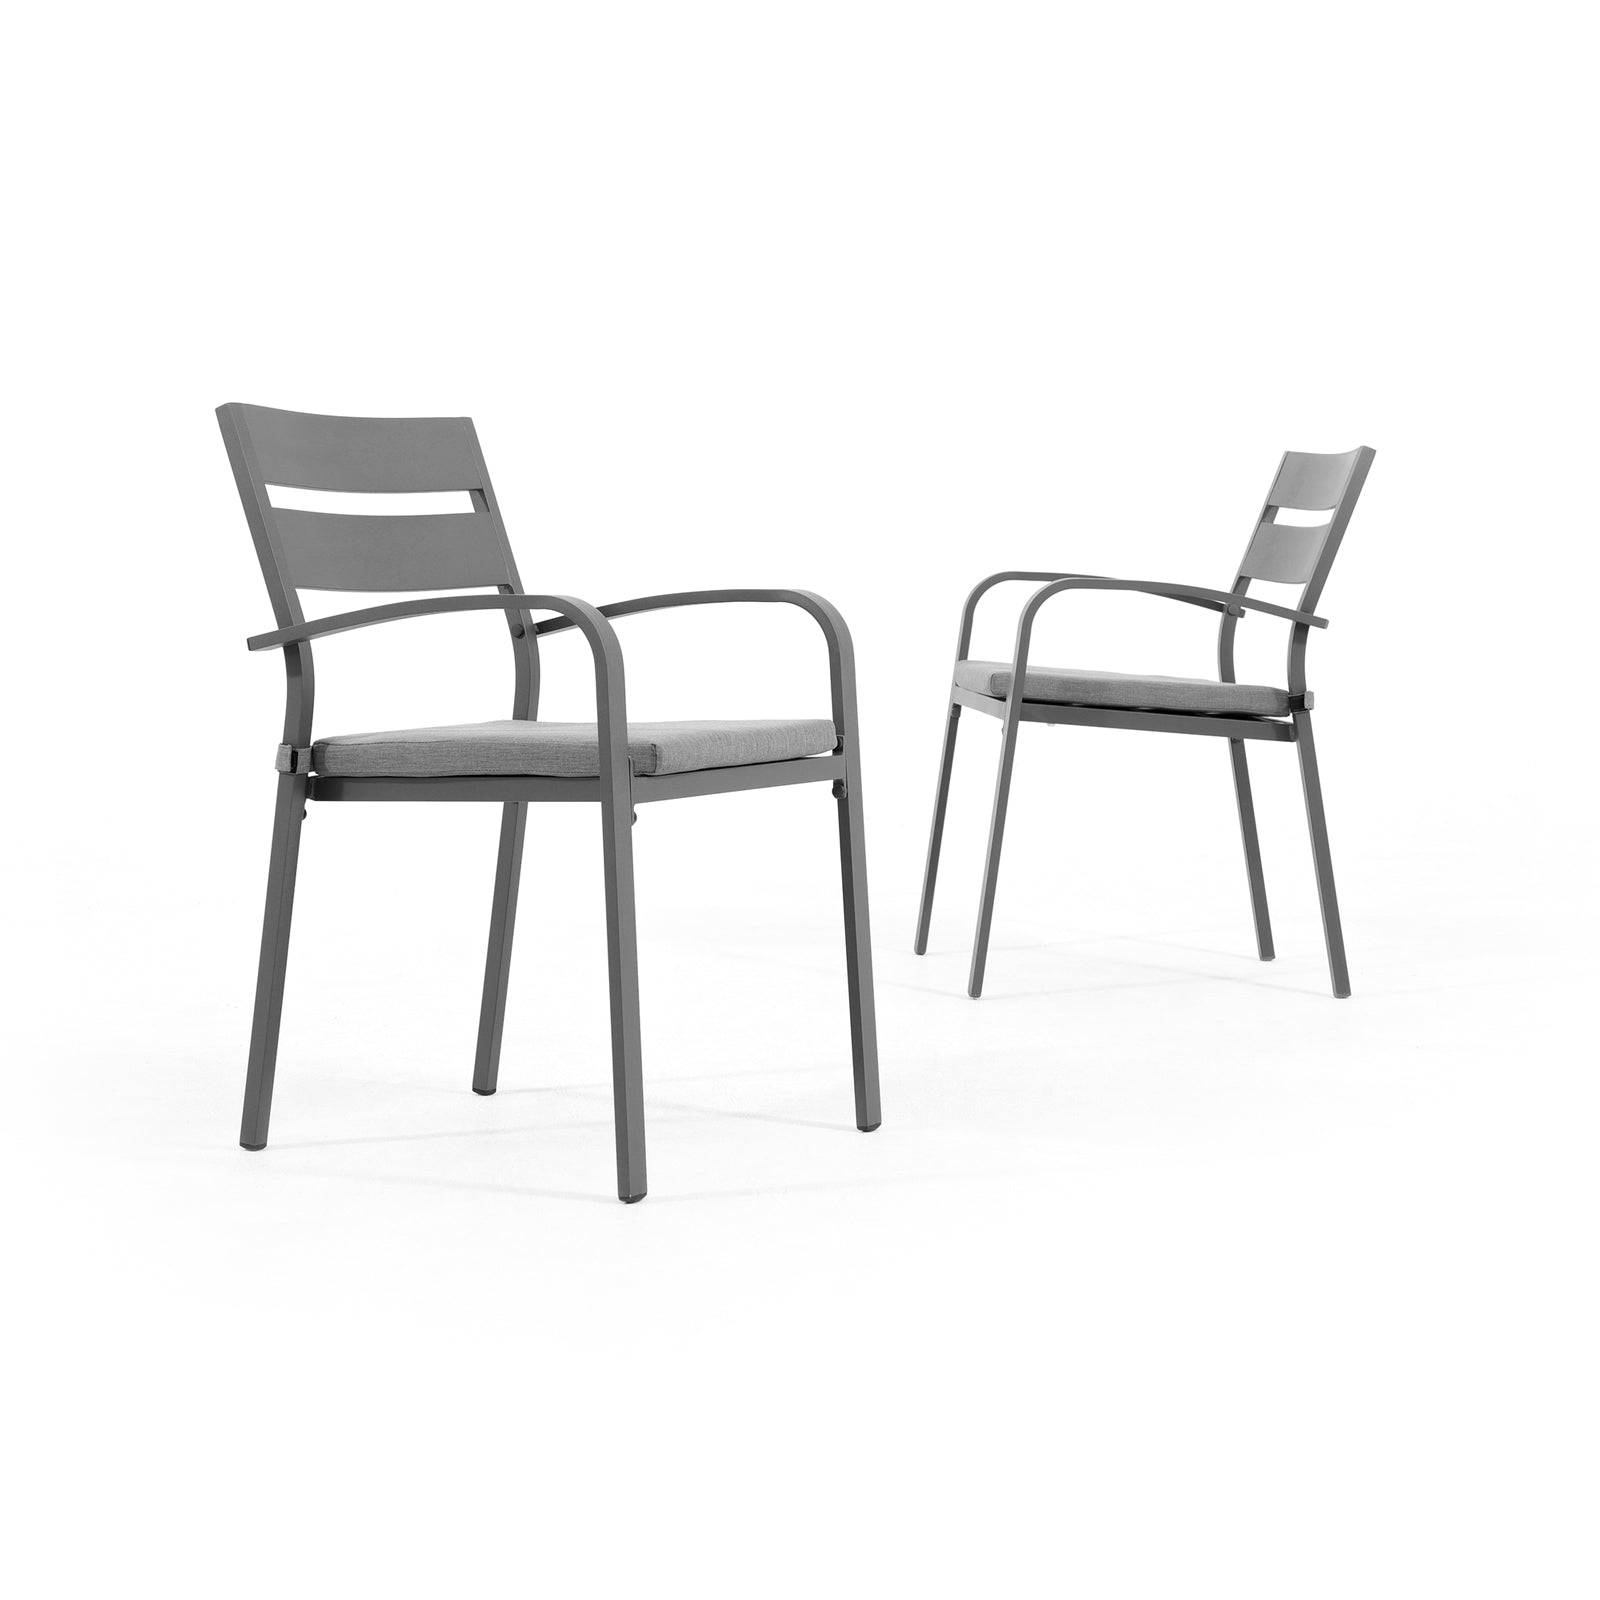 Salina grey outdoor Metal dining chair, grey cushion- Jardina Furniture